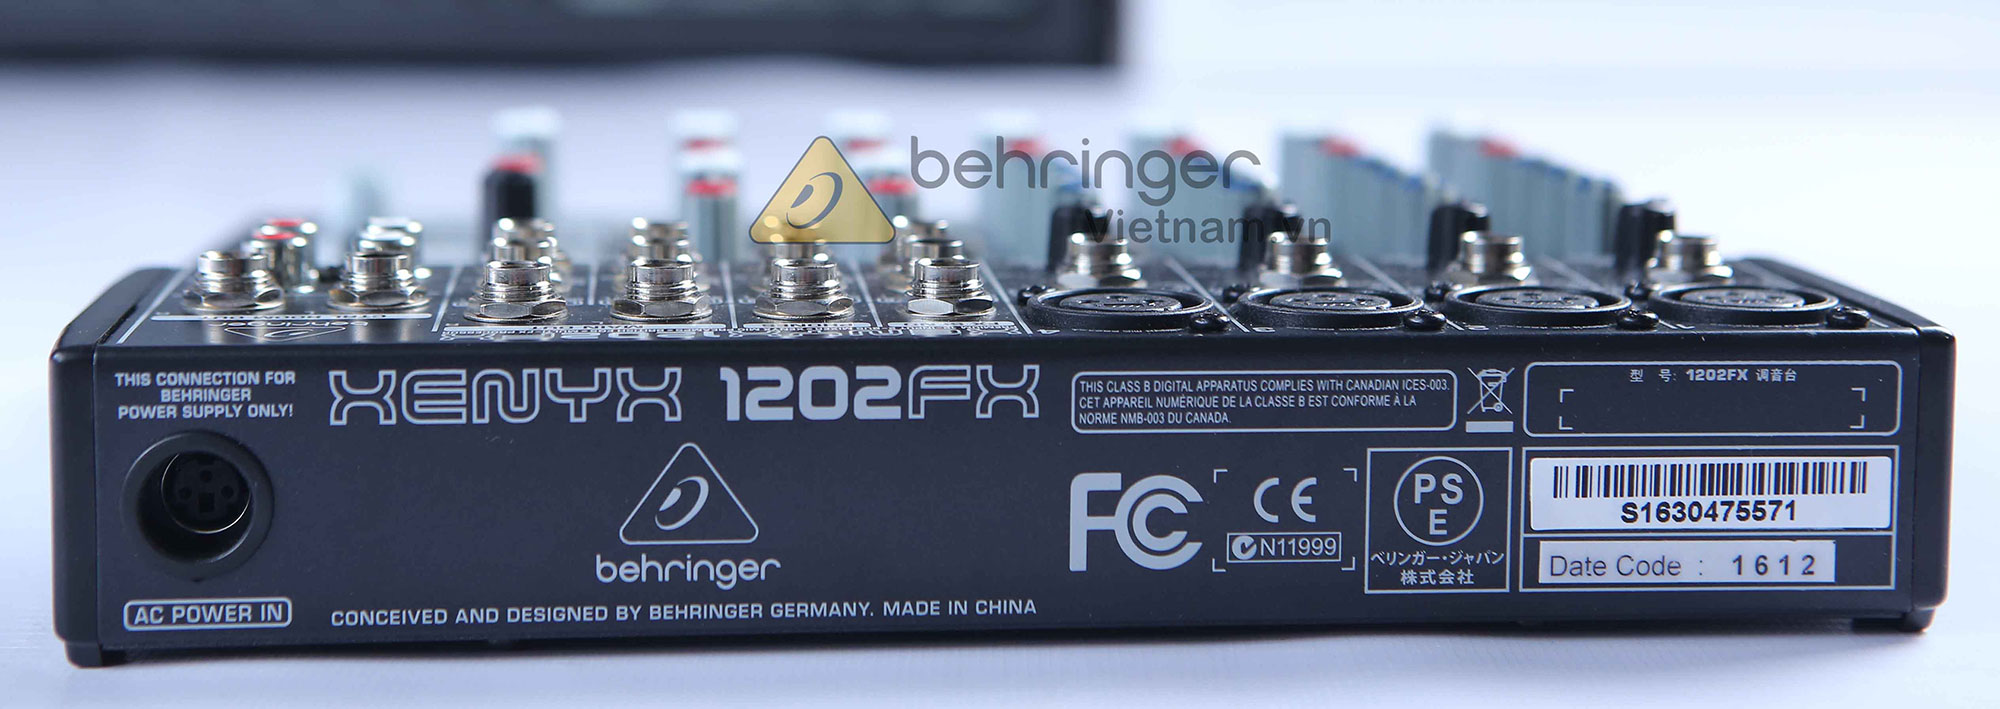 Mixer Behringer XENYX 1202FX